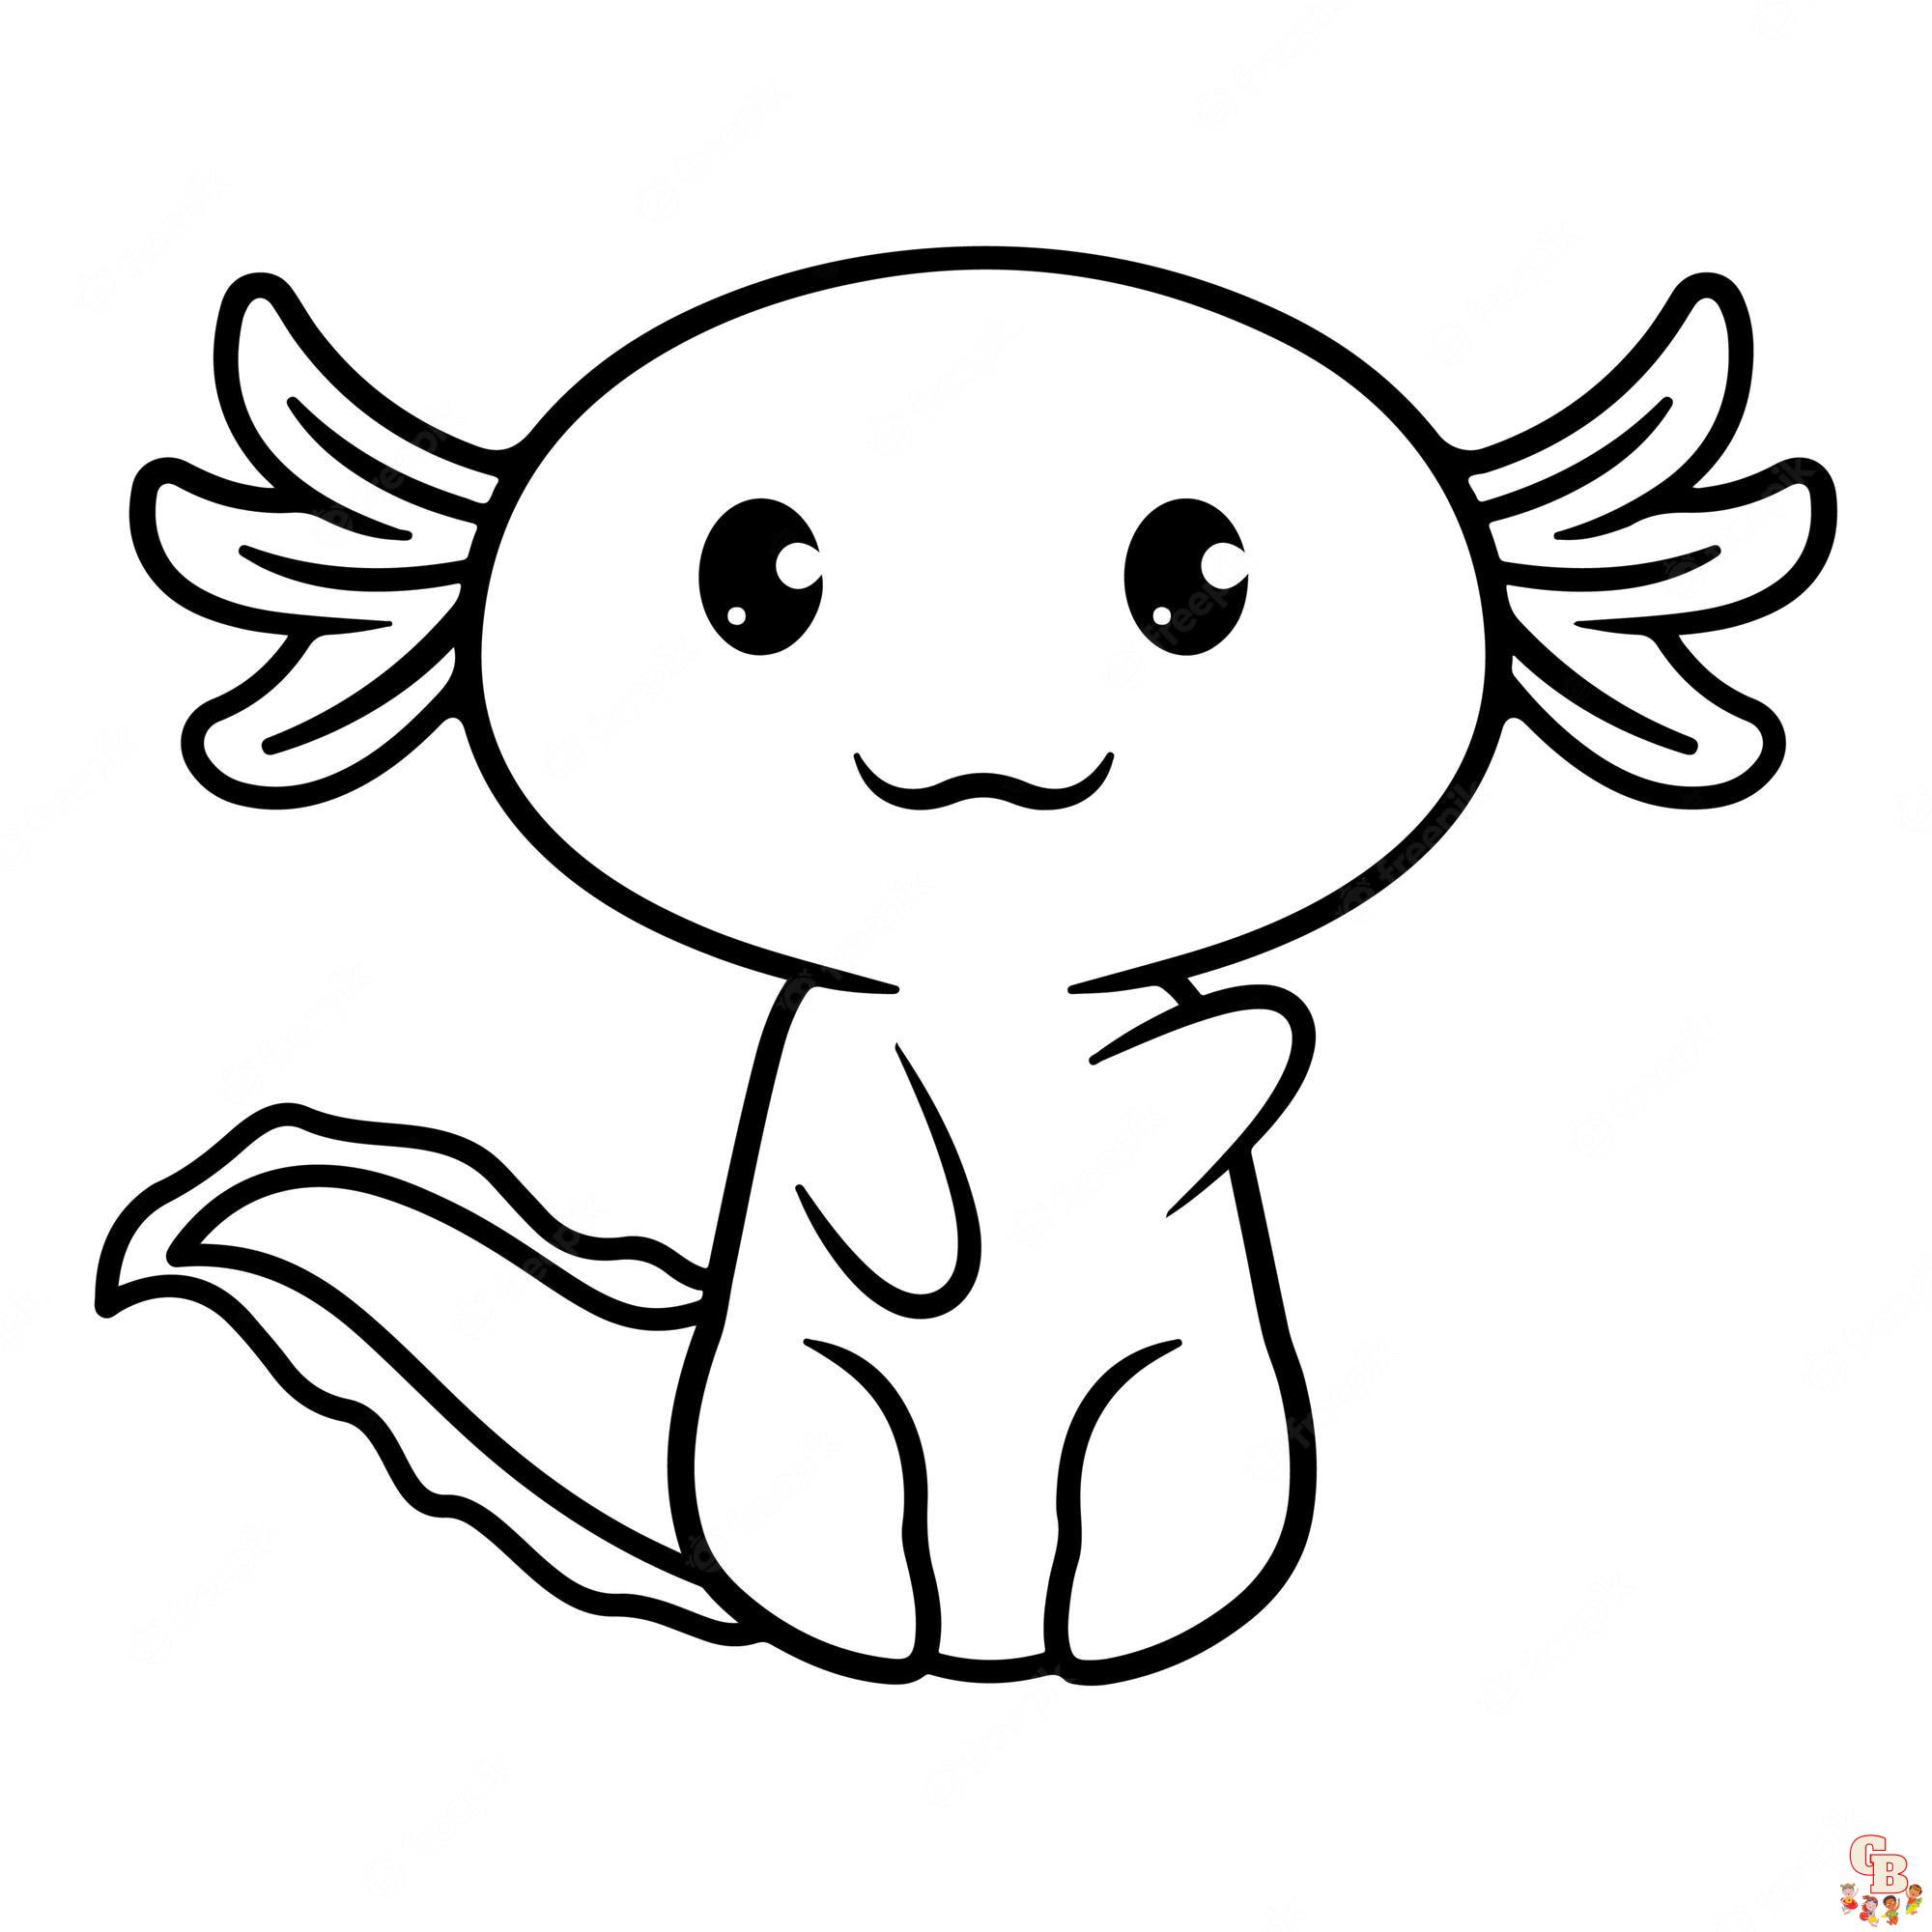 Malvorlagen Axolotl 1